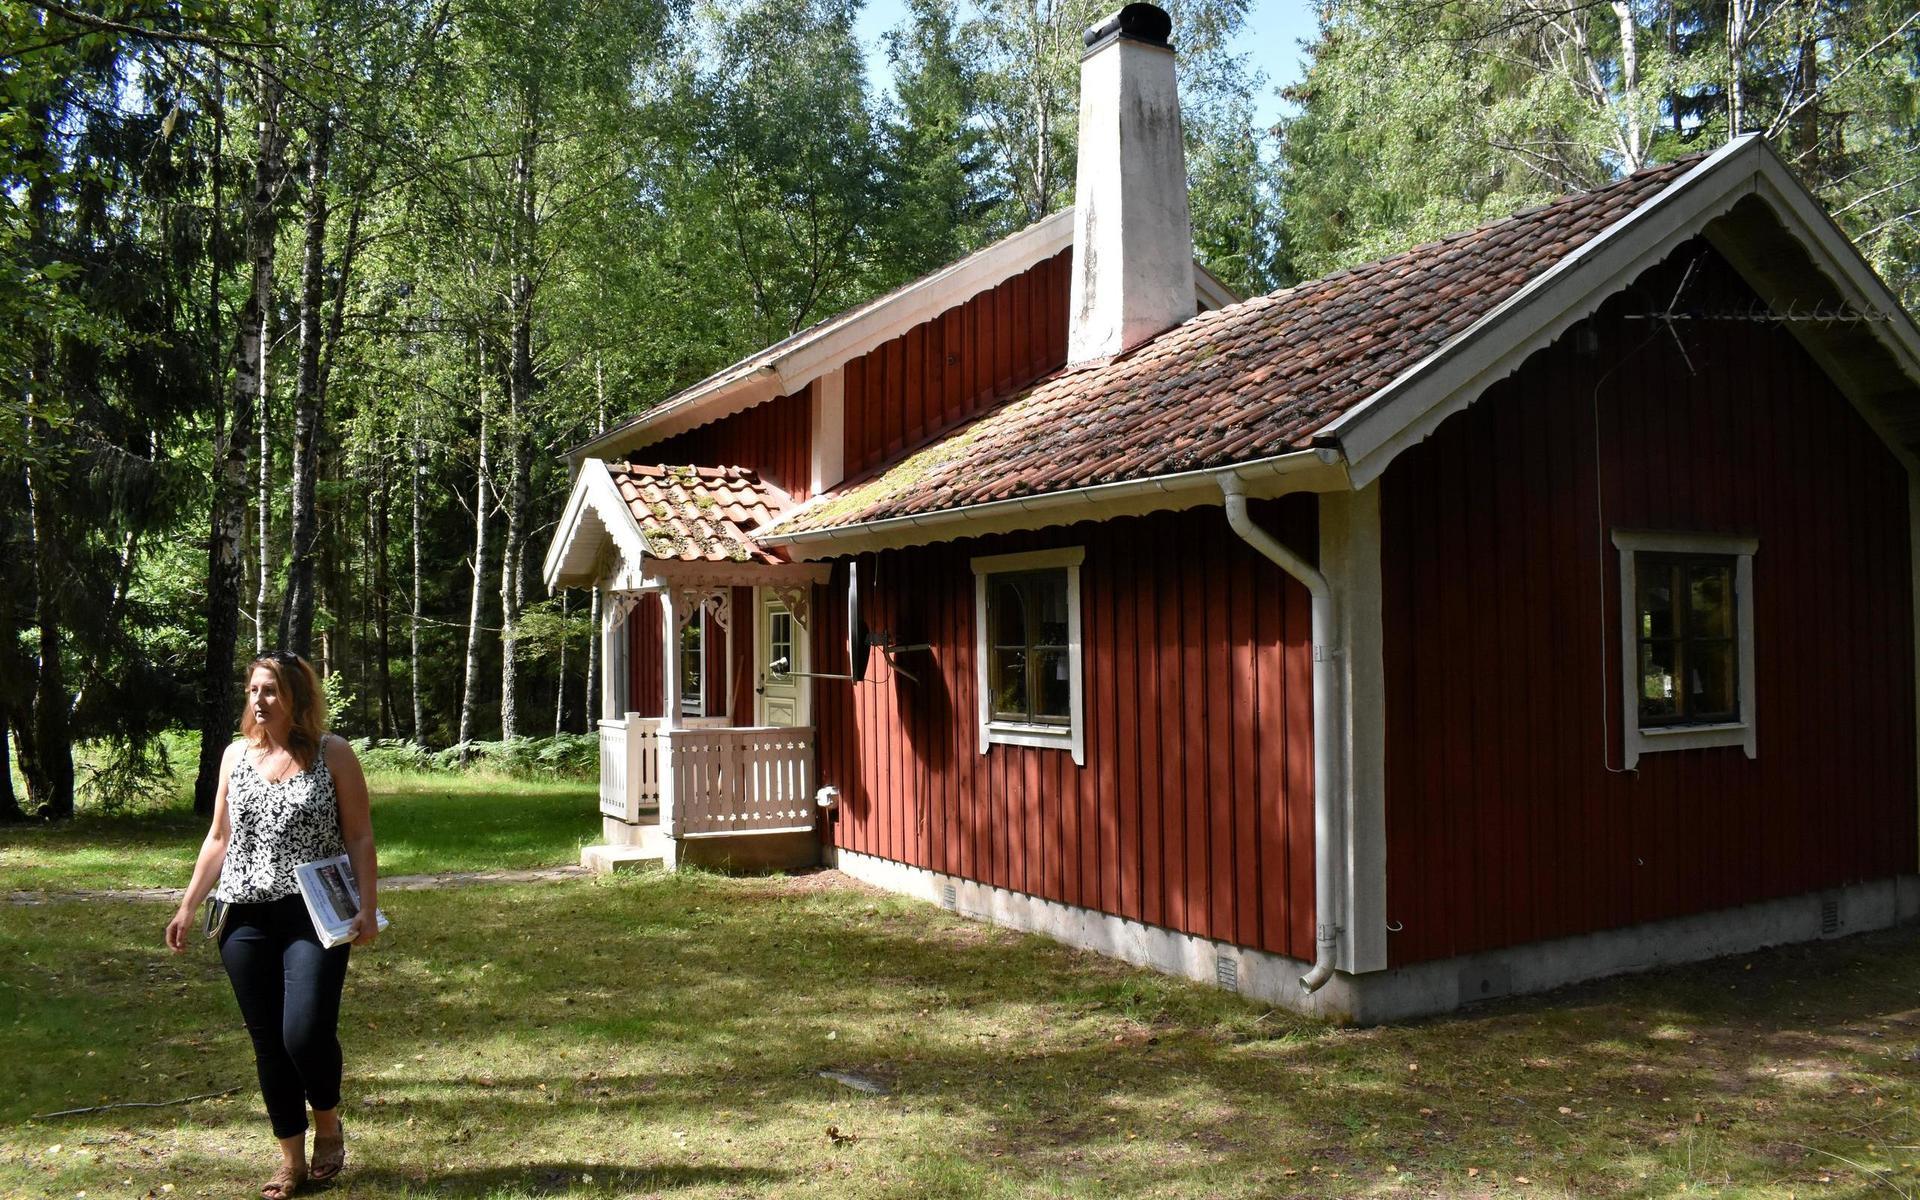 Storstugorna ligger i ett lummigt skogsområde, byggda av pappa Ove Albinsson i ”ryggåsstugestil” med murade öppna spisar.